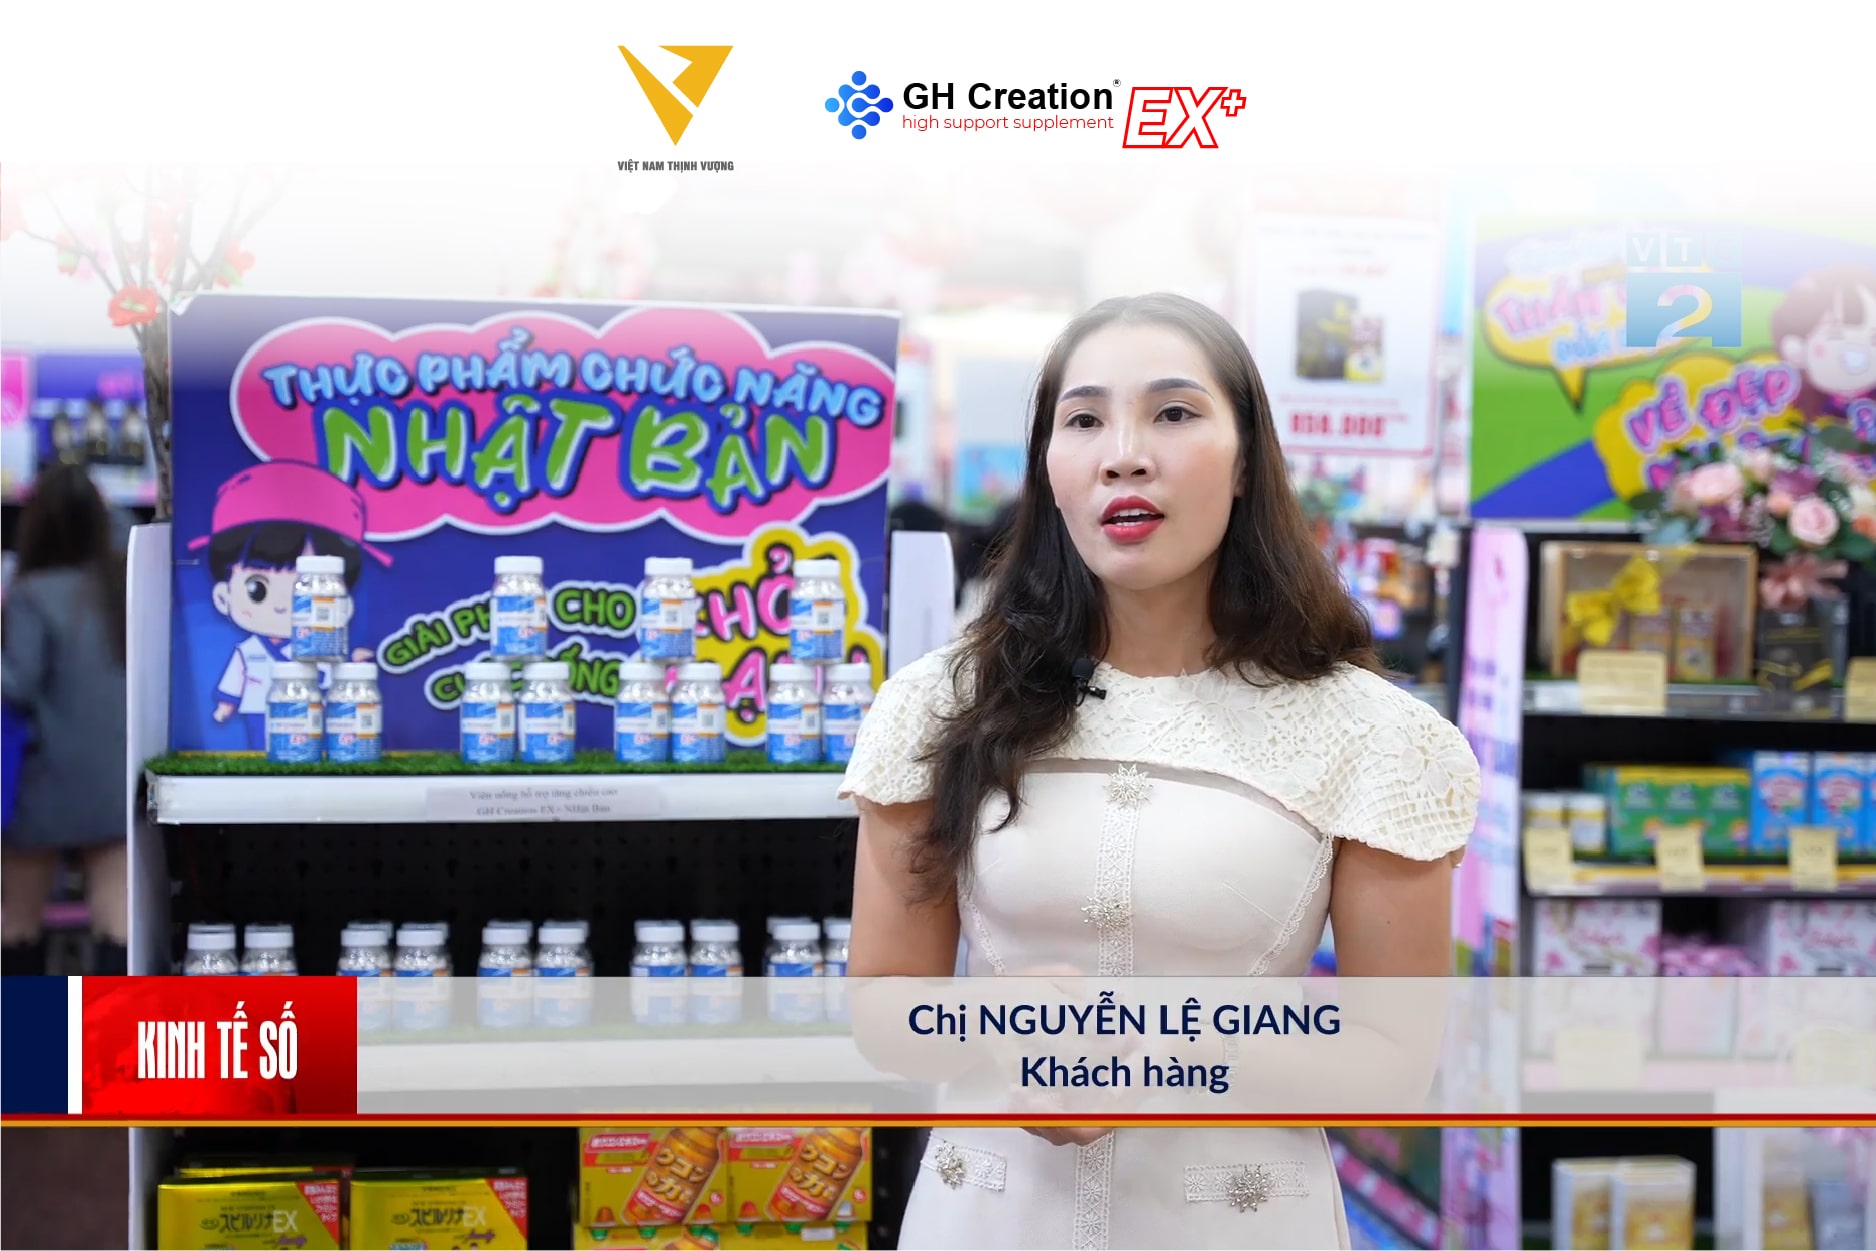 Chị Nguyễn Lệ Giang - một phụ huynh cho con sử dụng sản phẩm GH Creation EX+ chia sẻ trong bản tin Kinh tế số của đài truyền hình kỹ thuật số VTC